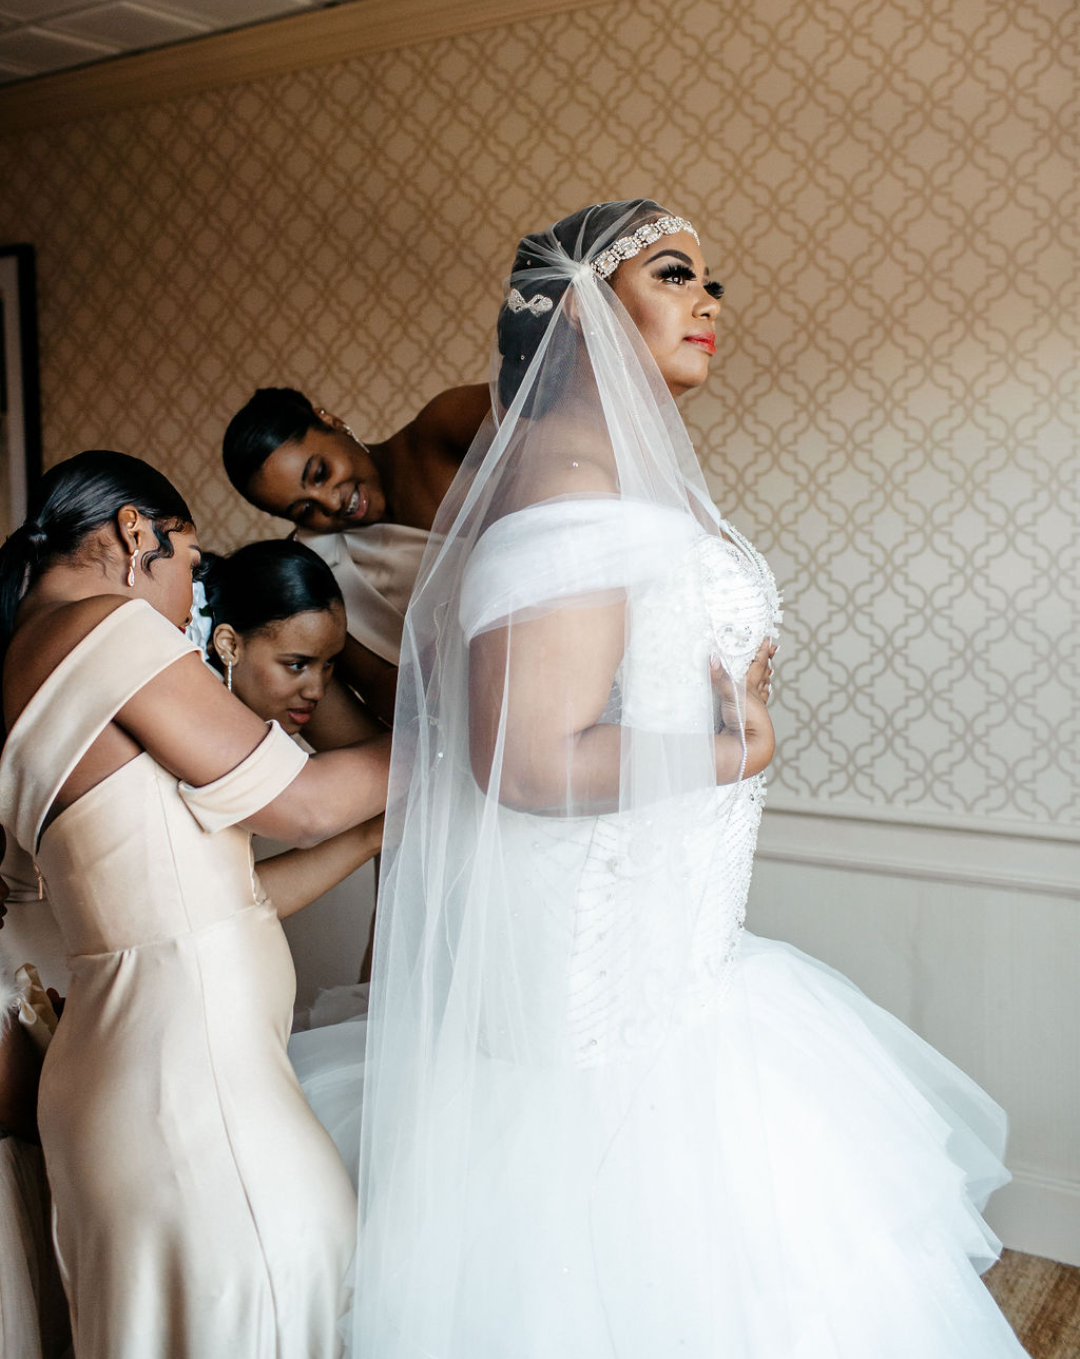 Unique Plus Size Wedding Dress Ideas For Curvy Brides